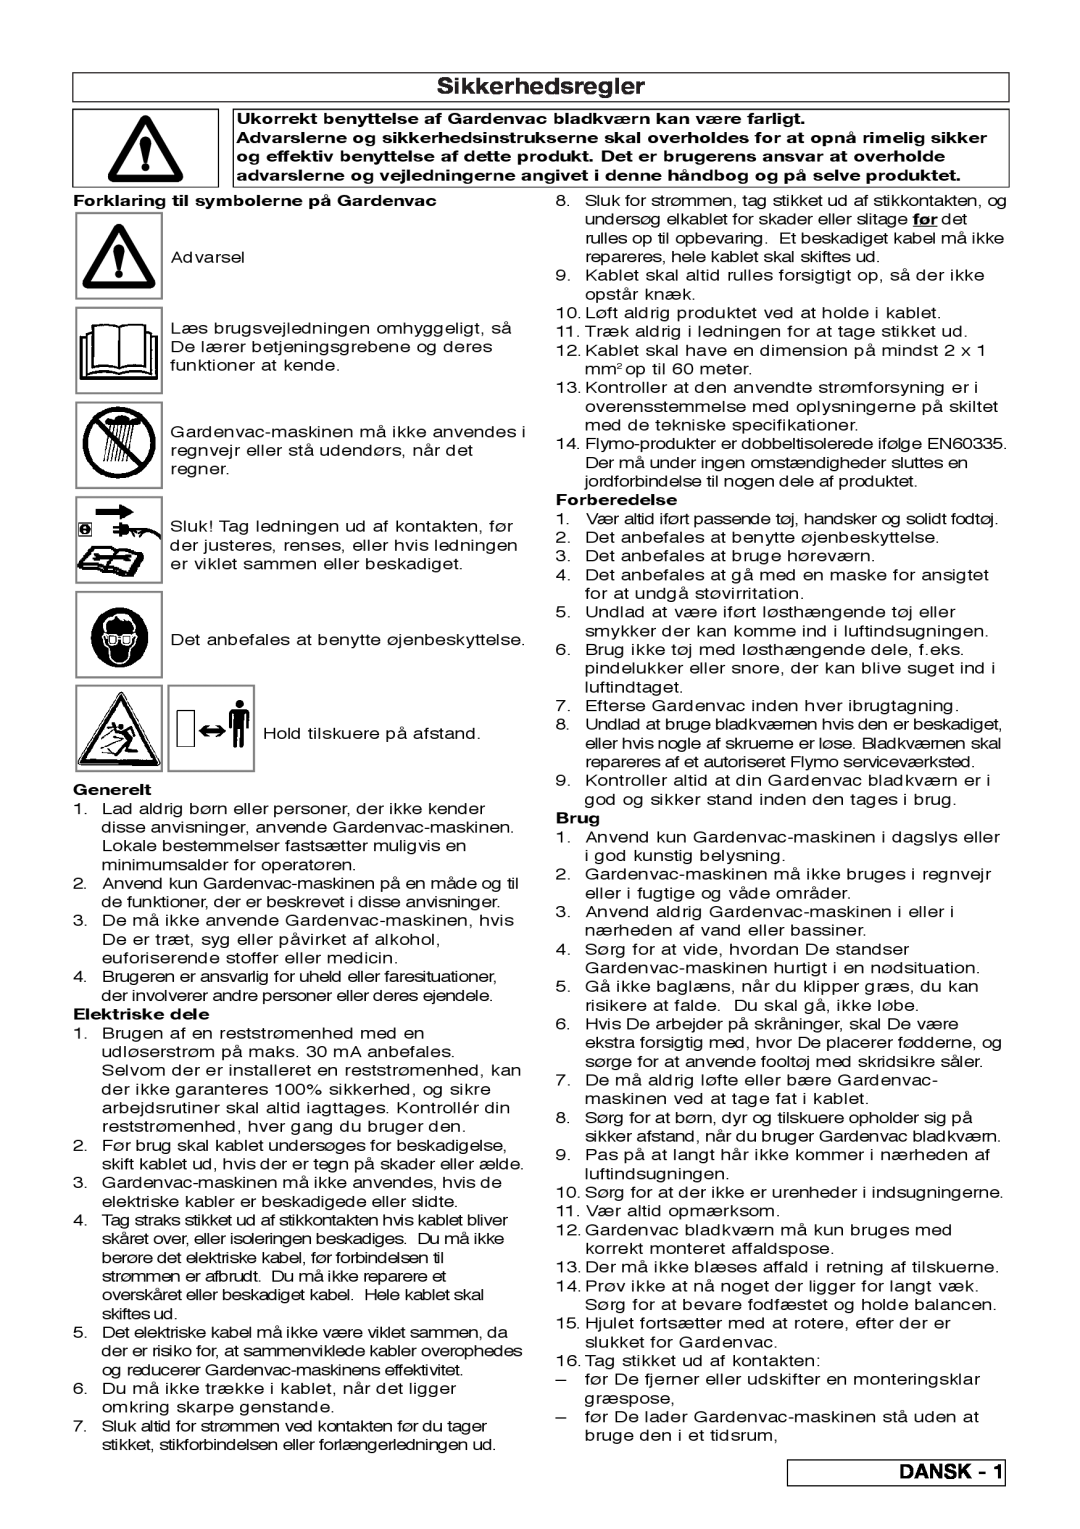 Flymo 2200 Sikkerhedsregler, Dansk, Forklaring til symbolerne på Gardenvac, Generelt, Elektriske dele, Forberedelse, Brug 